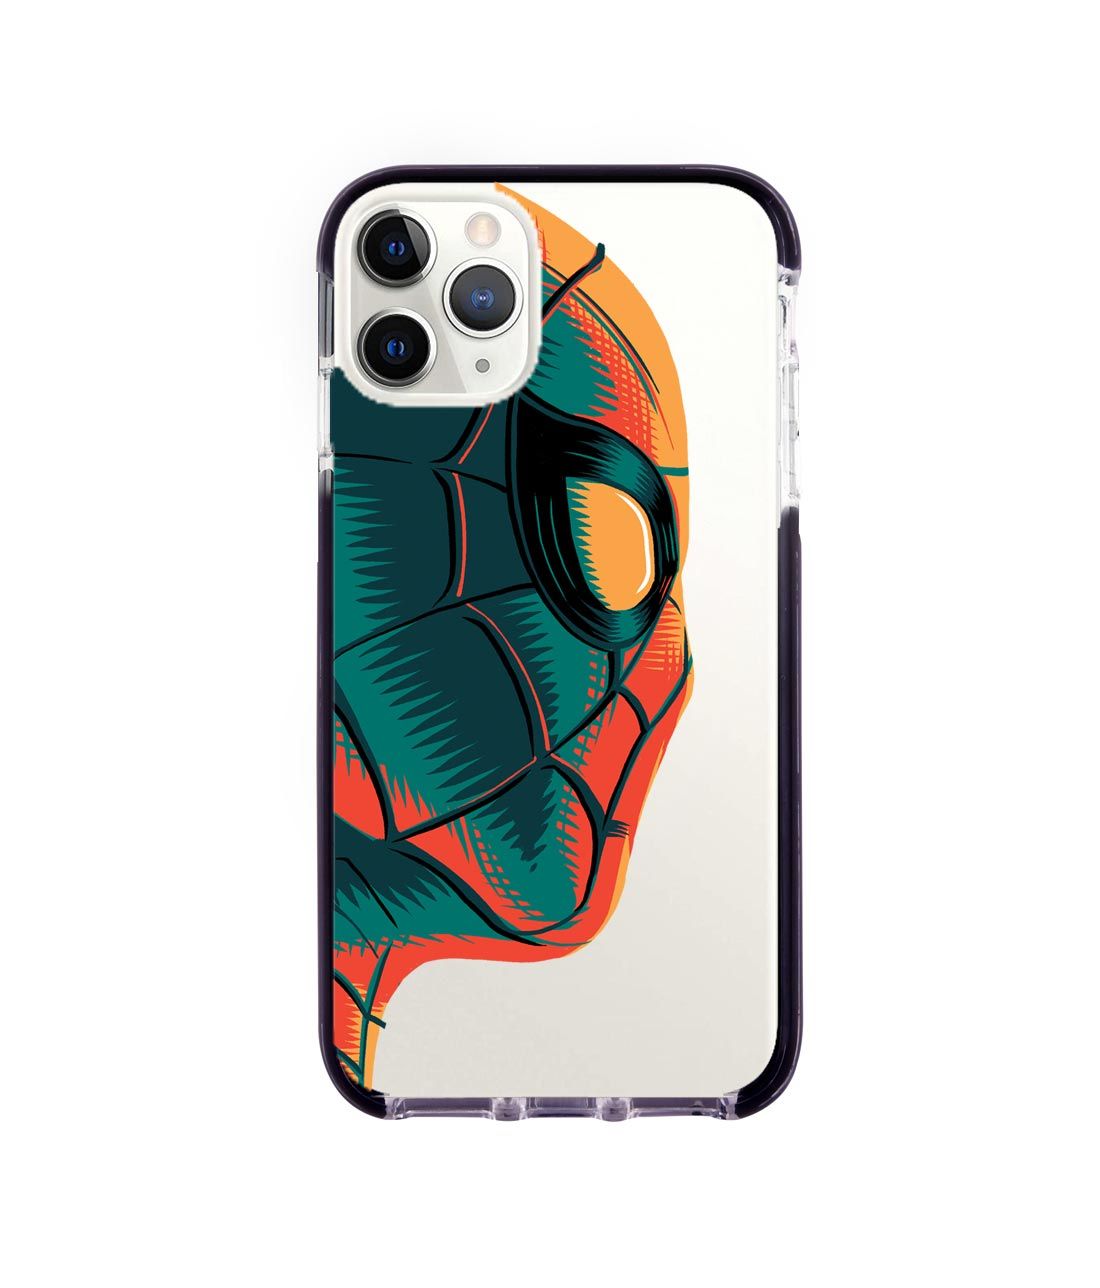 Illuminated Spiderman - Extreme Phone Case for iPhone 11 Pro